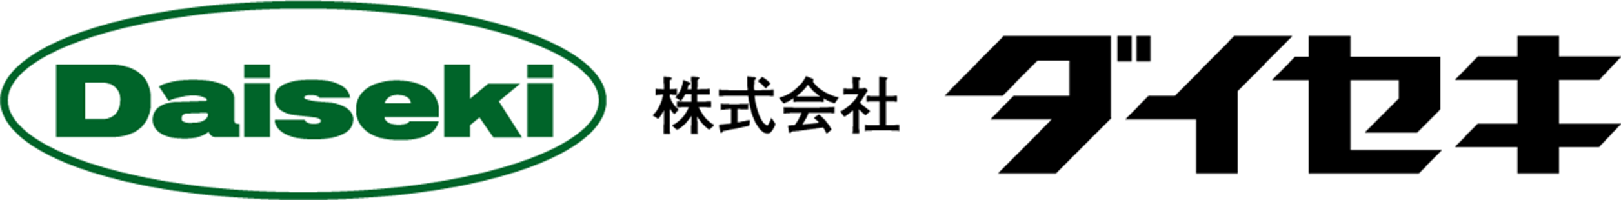 株式会社ダイセキ ロゴ